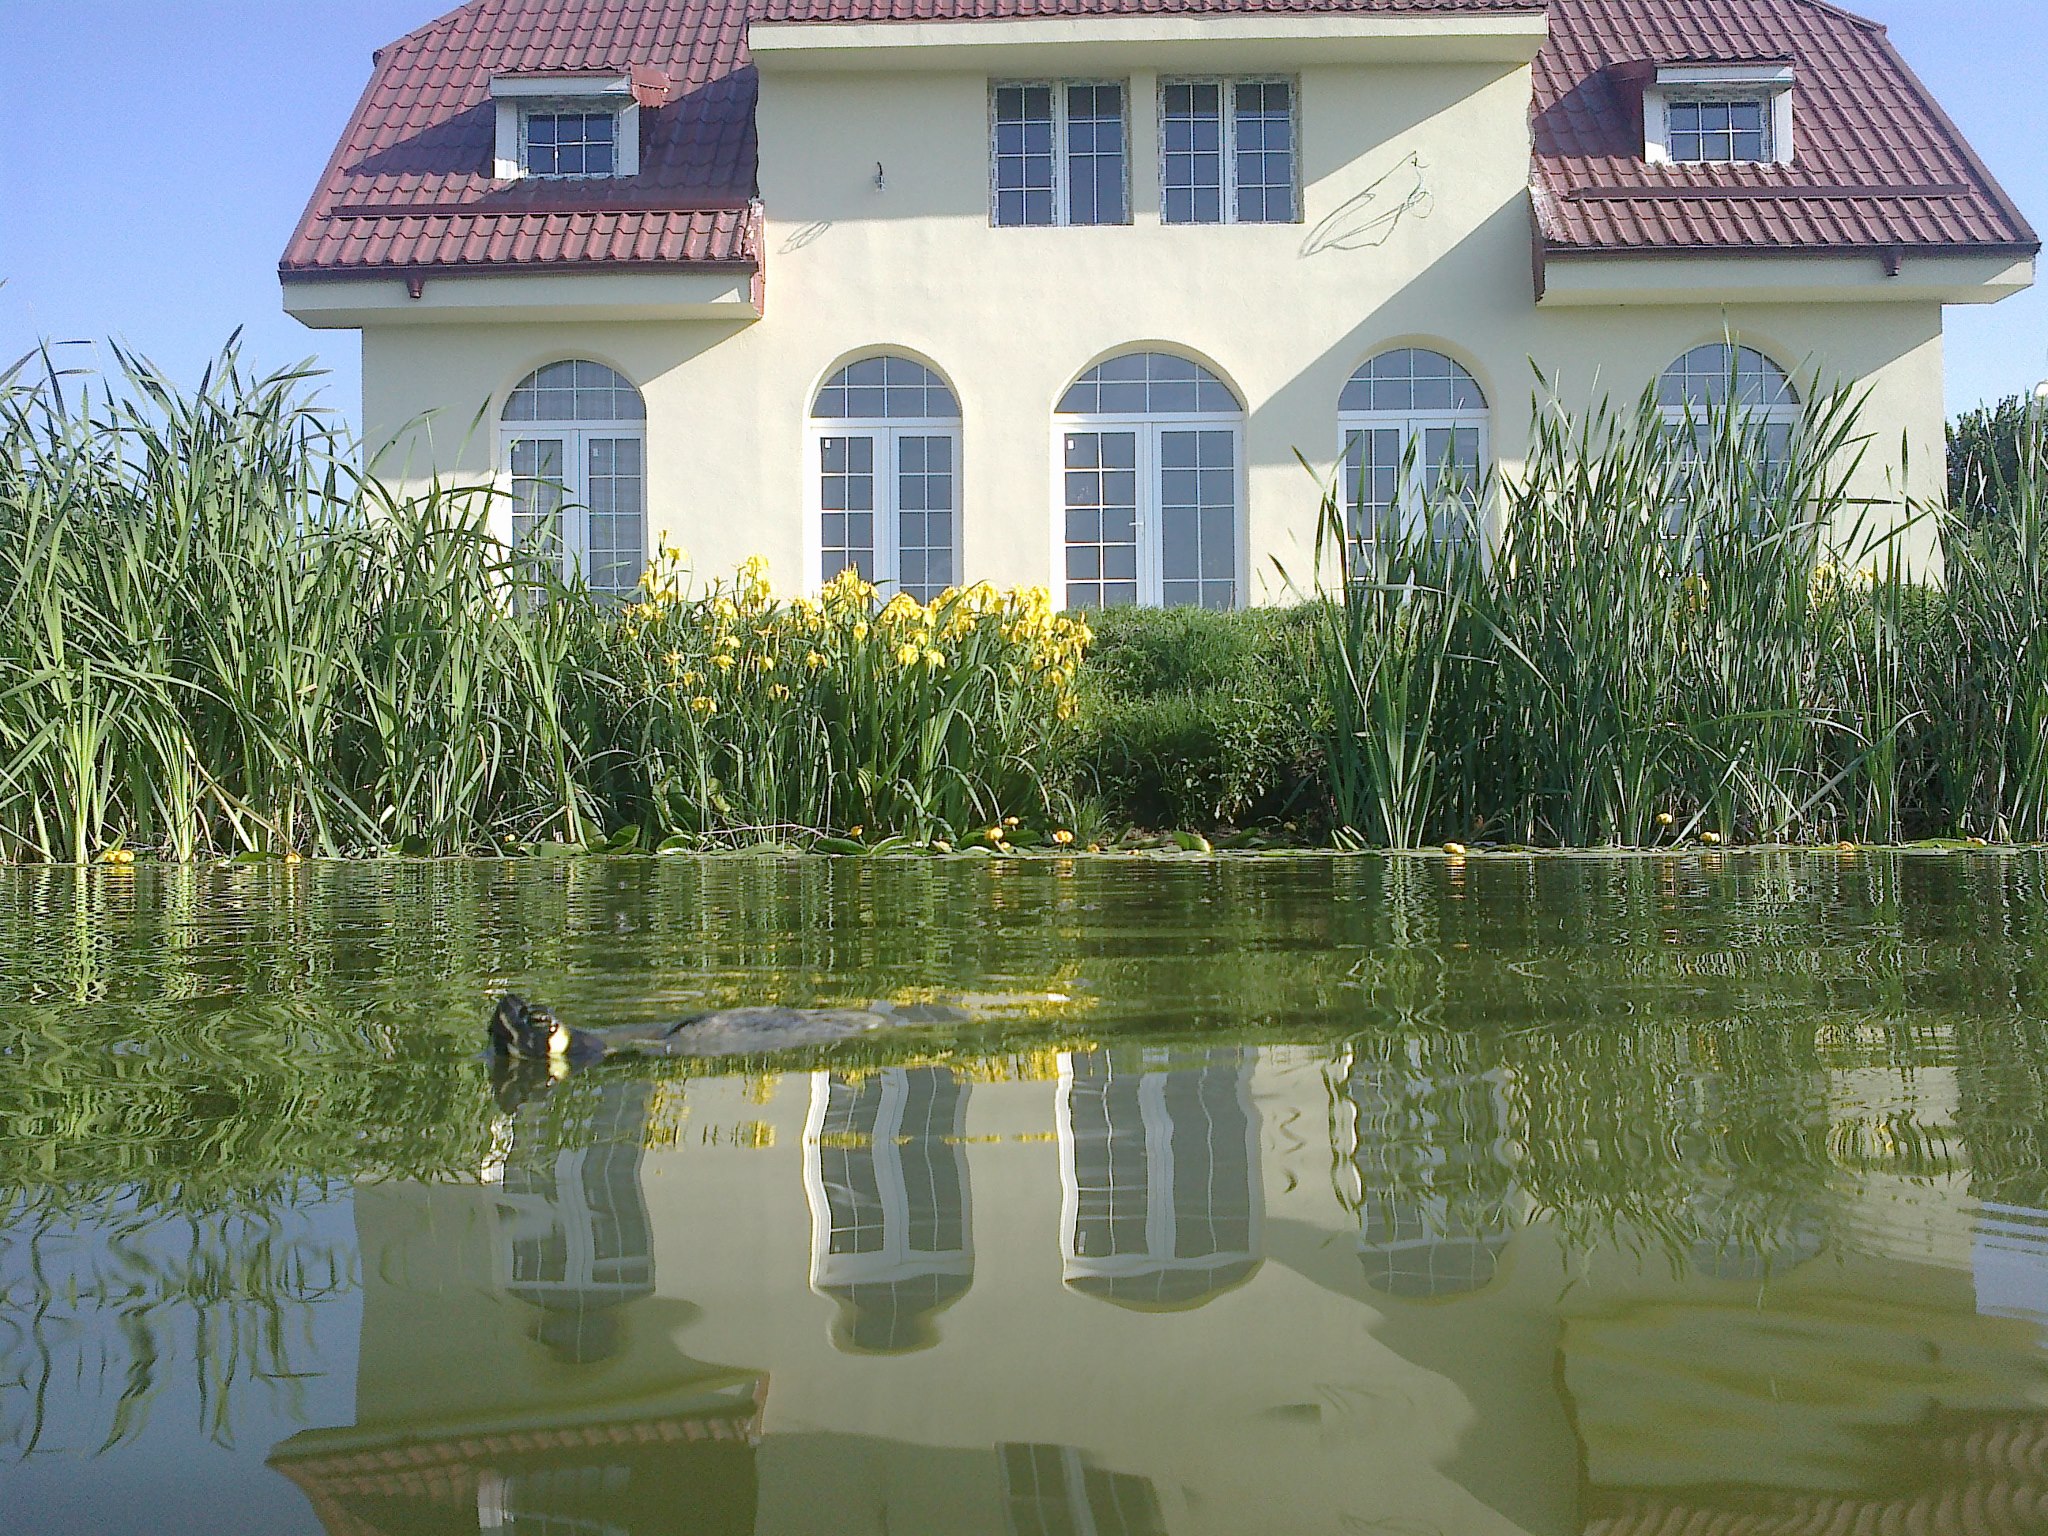 Una din testoasele care se afla in lacul situat in fata casei lui Ogica